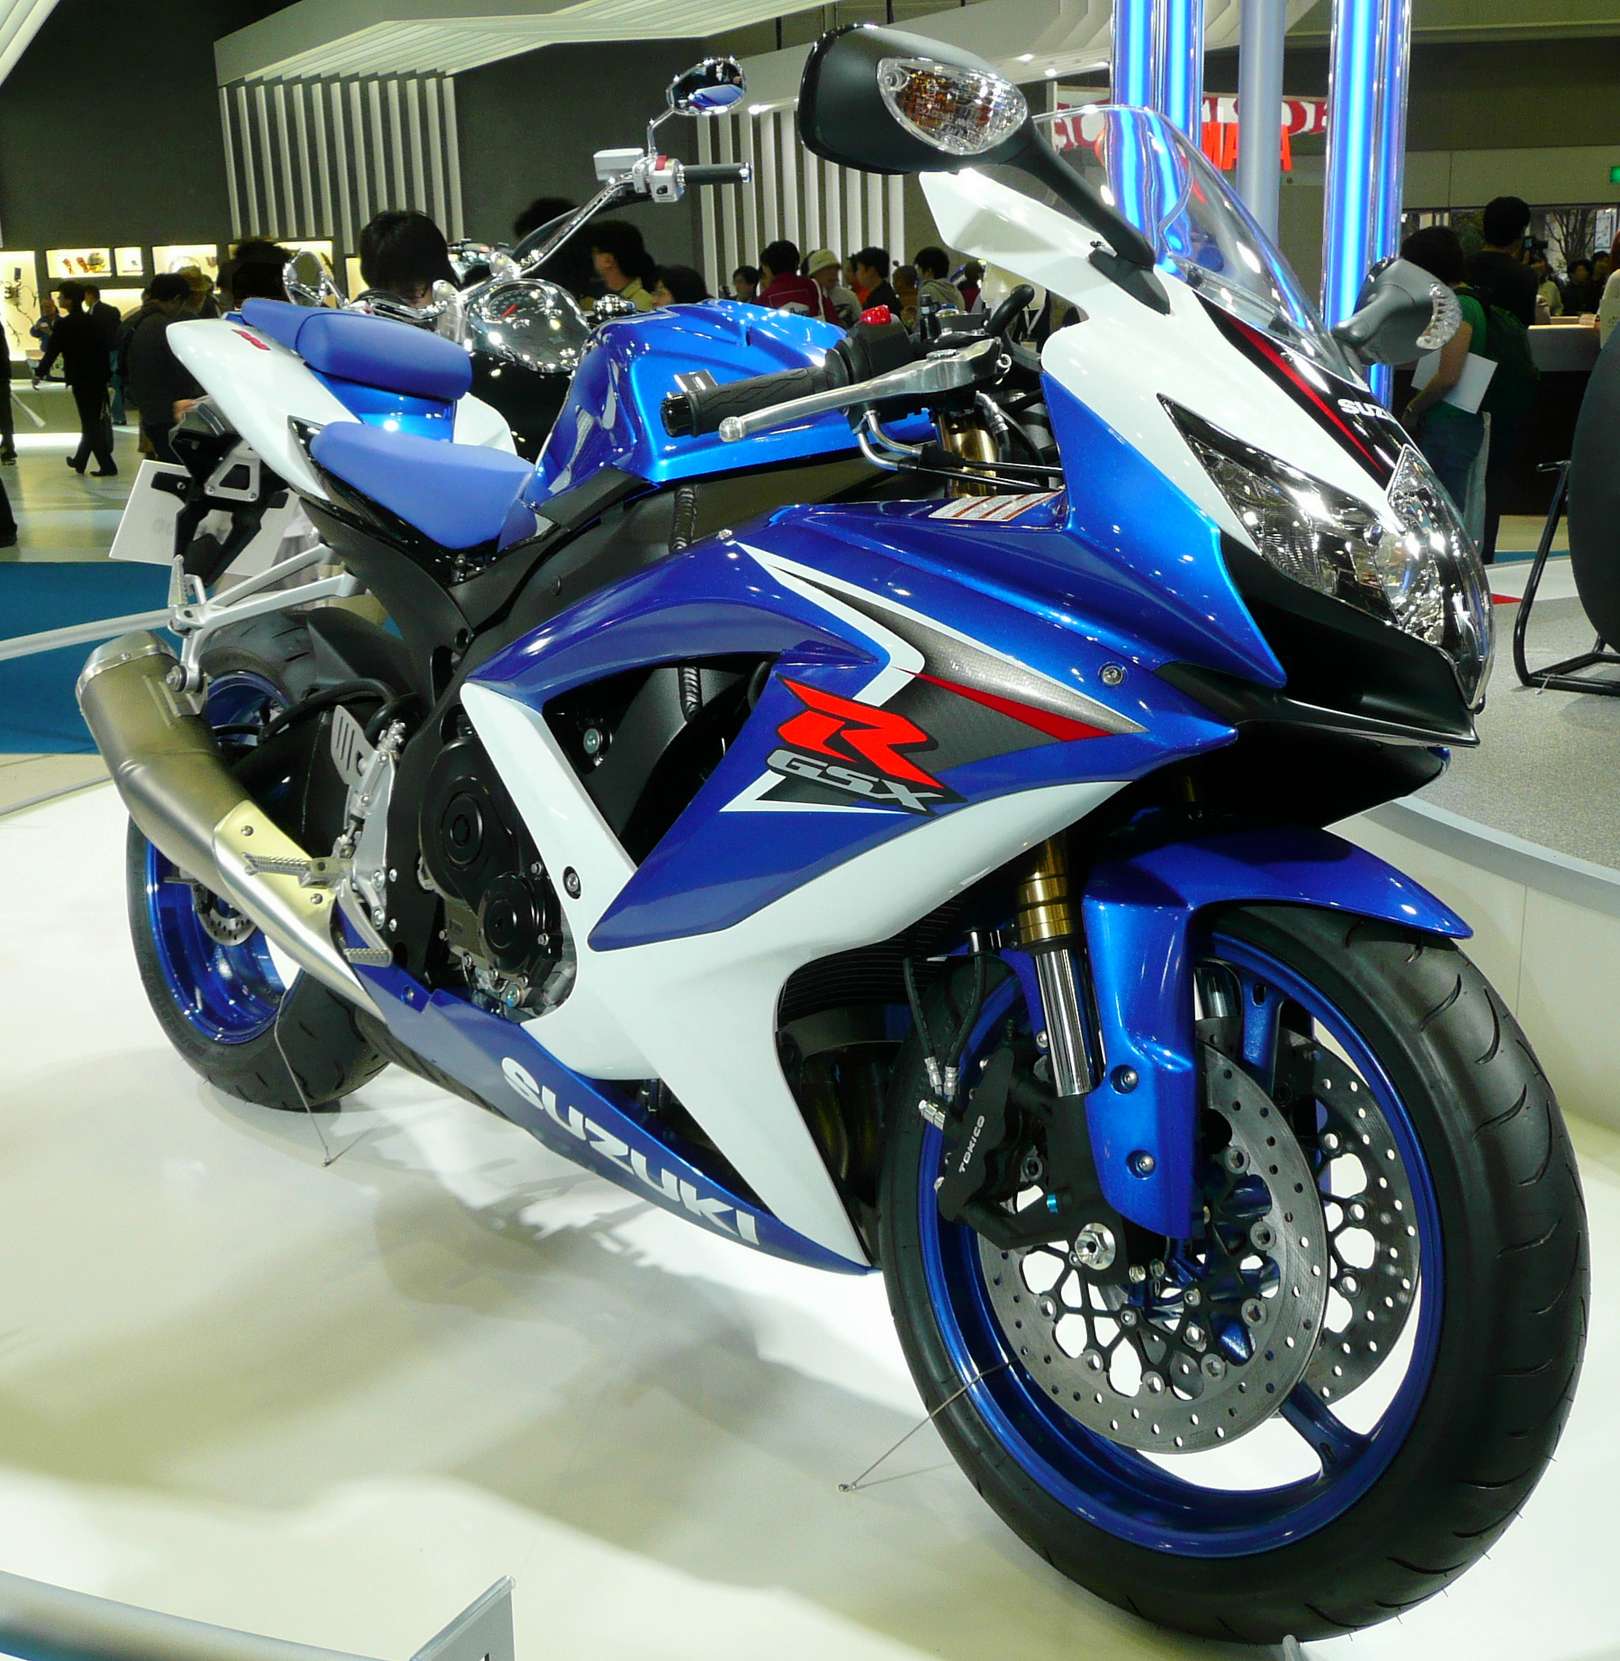 Suzuki_GSX-R